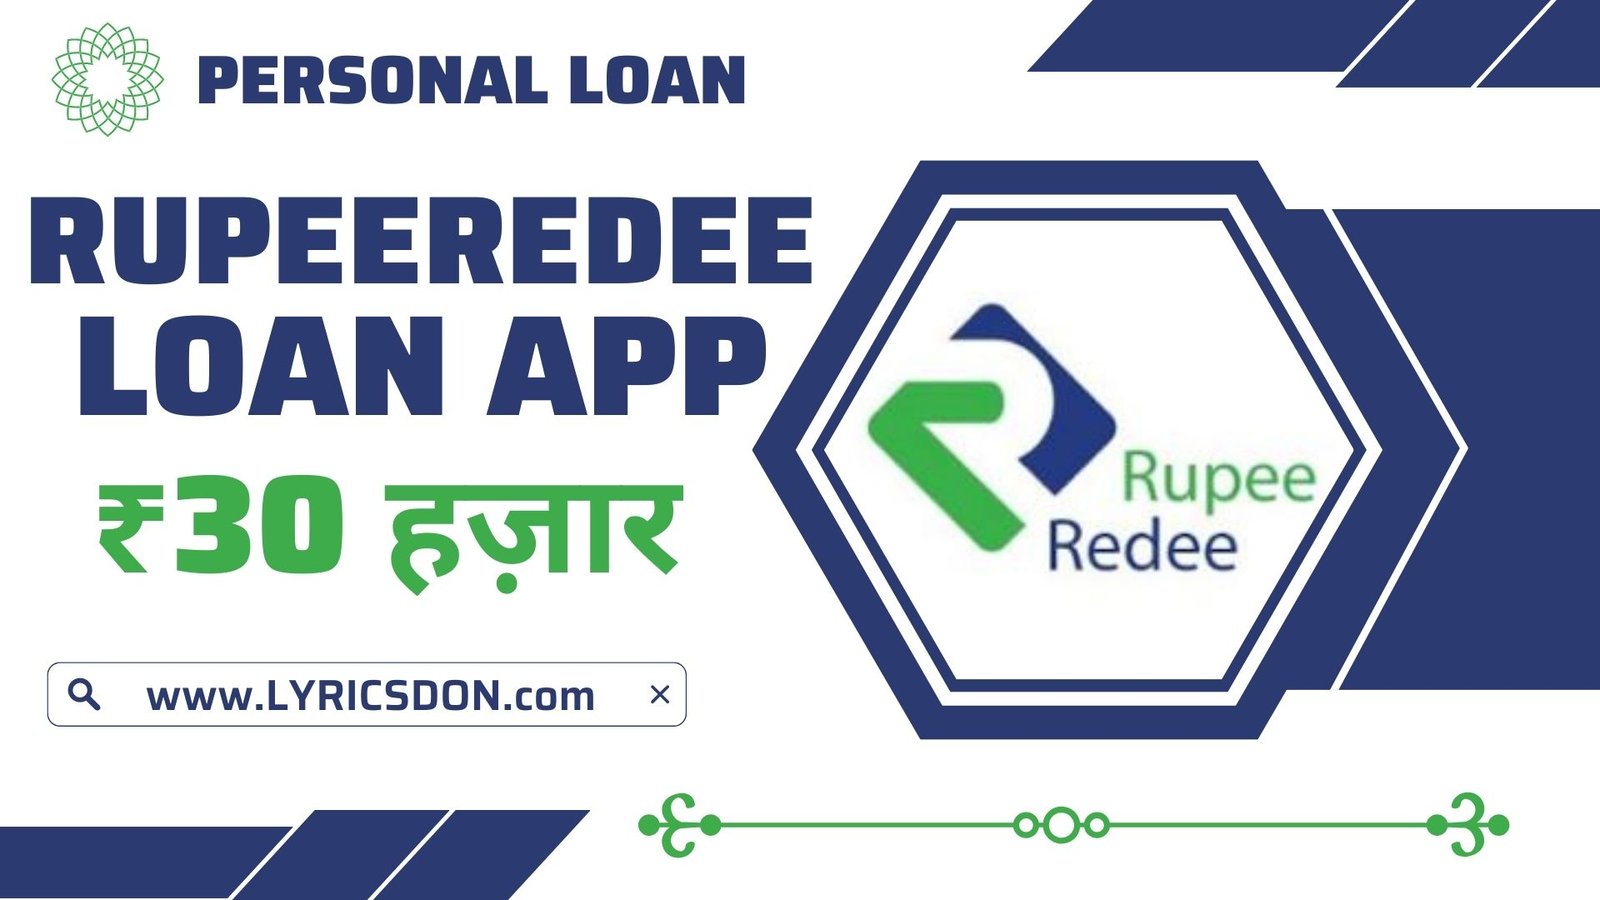 RupeeRedee Loan App Loan Amount